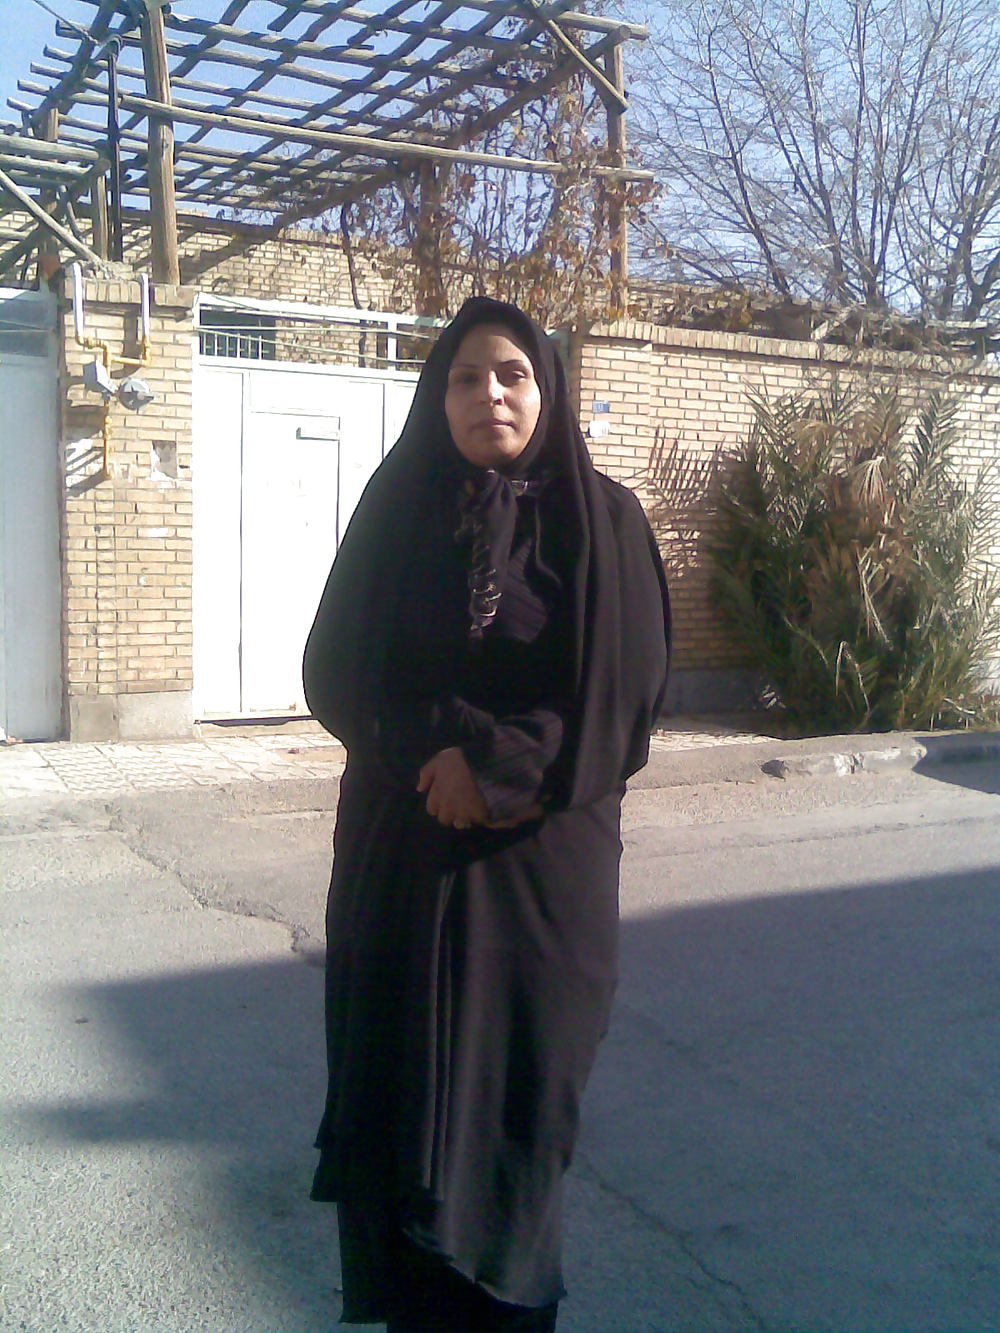 1000px x 1333px - Hijab irani - 1 Pics | xHamster